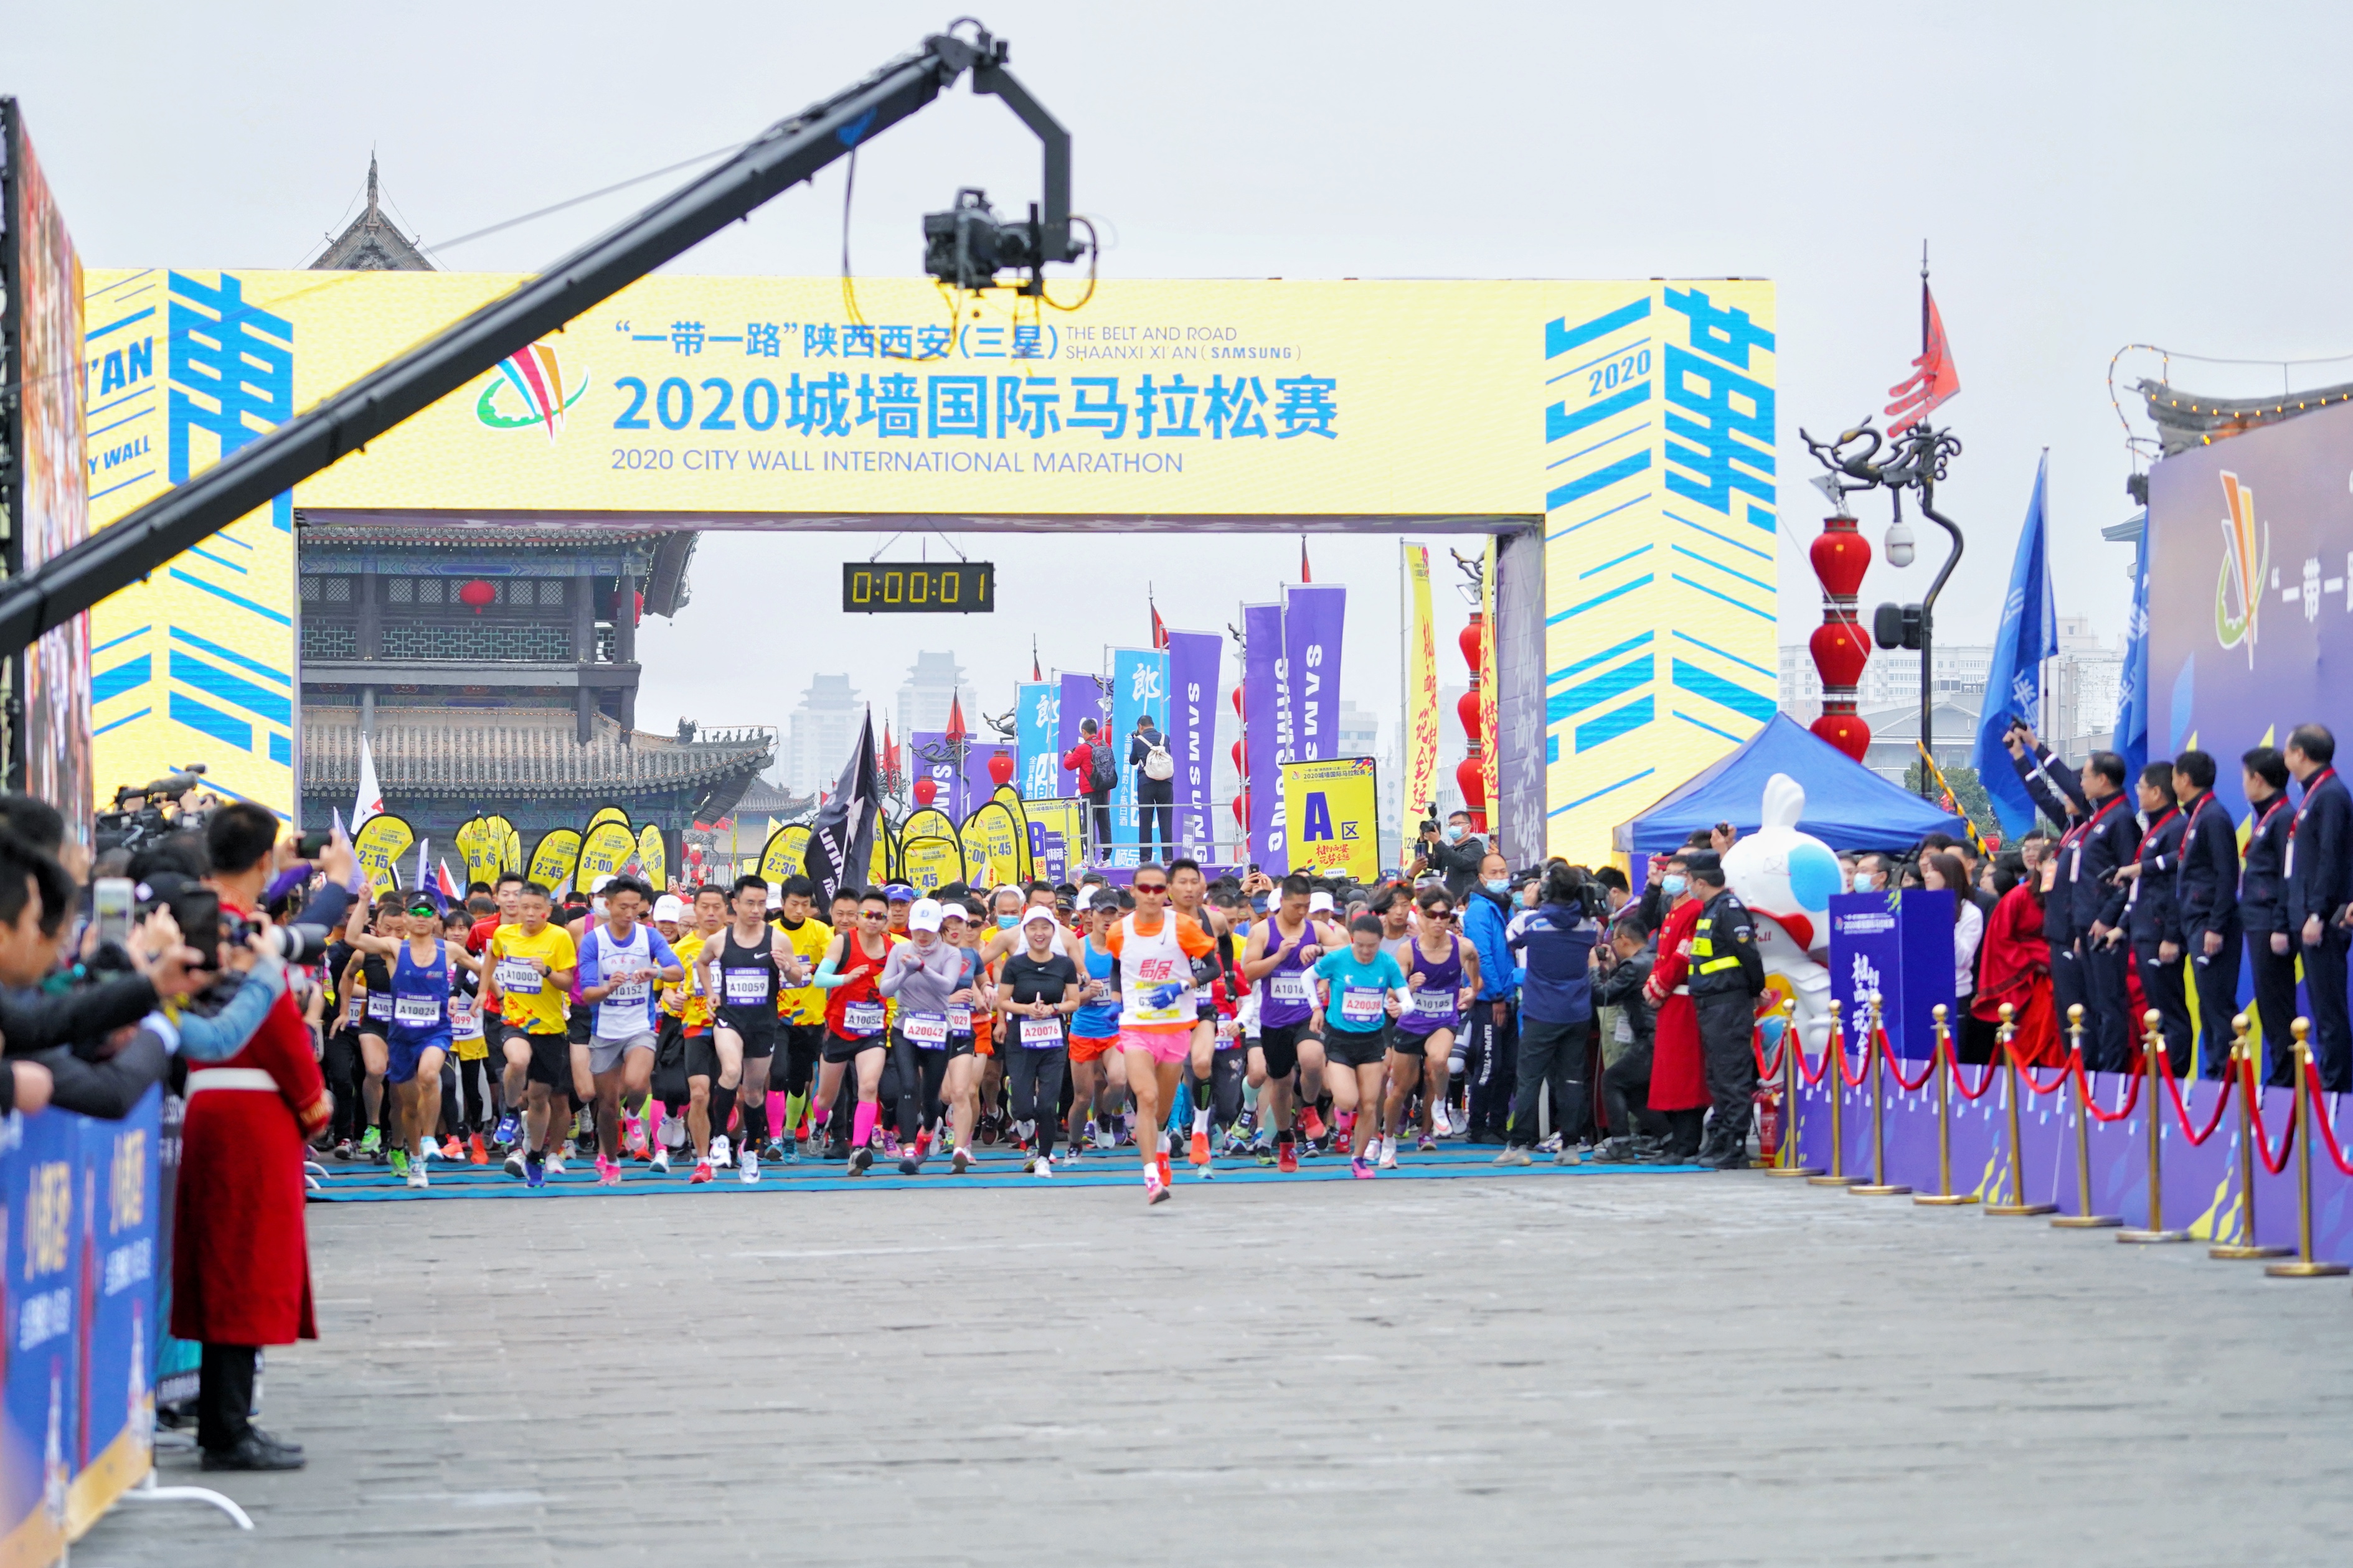 2020西安城墙国际马拉松赛欢乐起跑 掀起我要上全运全民热潮